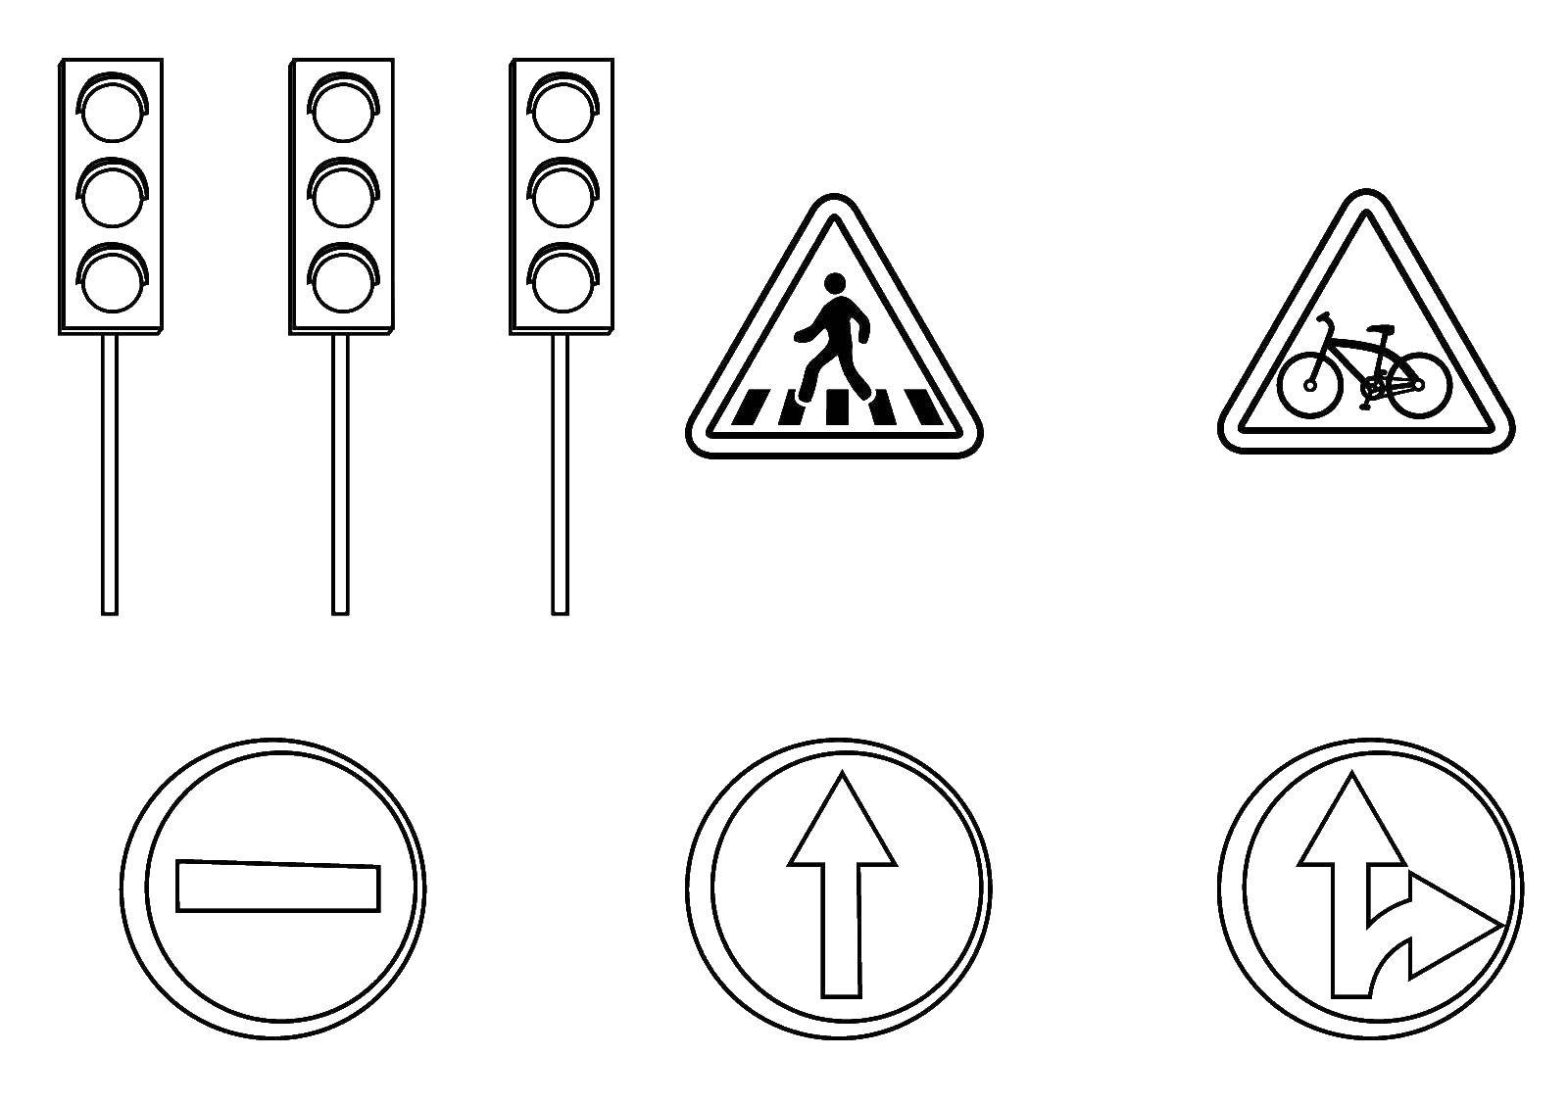 Раскраска дорожного знака для детей (светофор, дети)